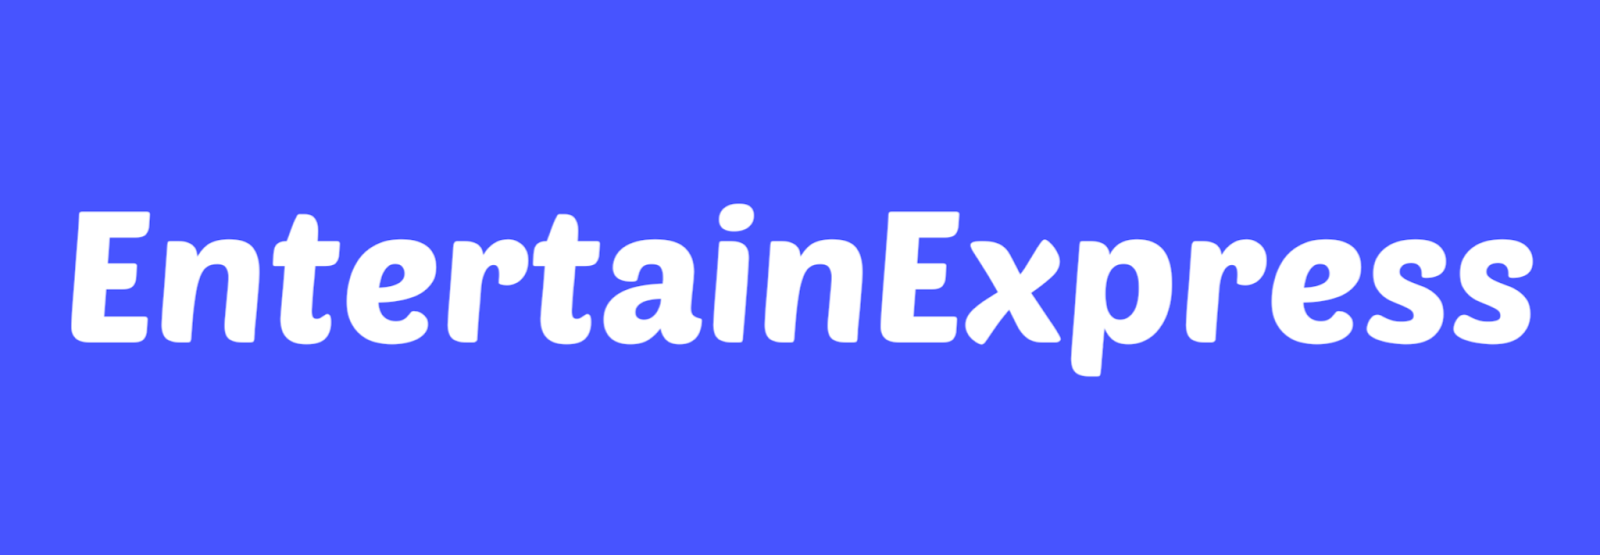 Entertain Express